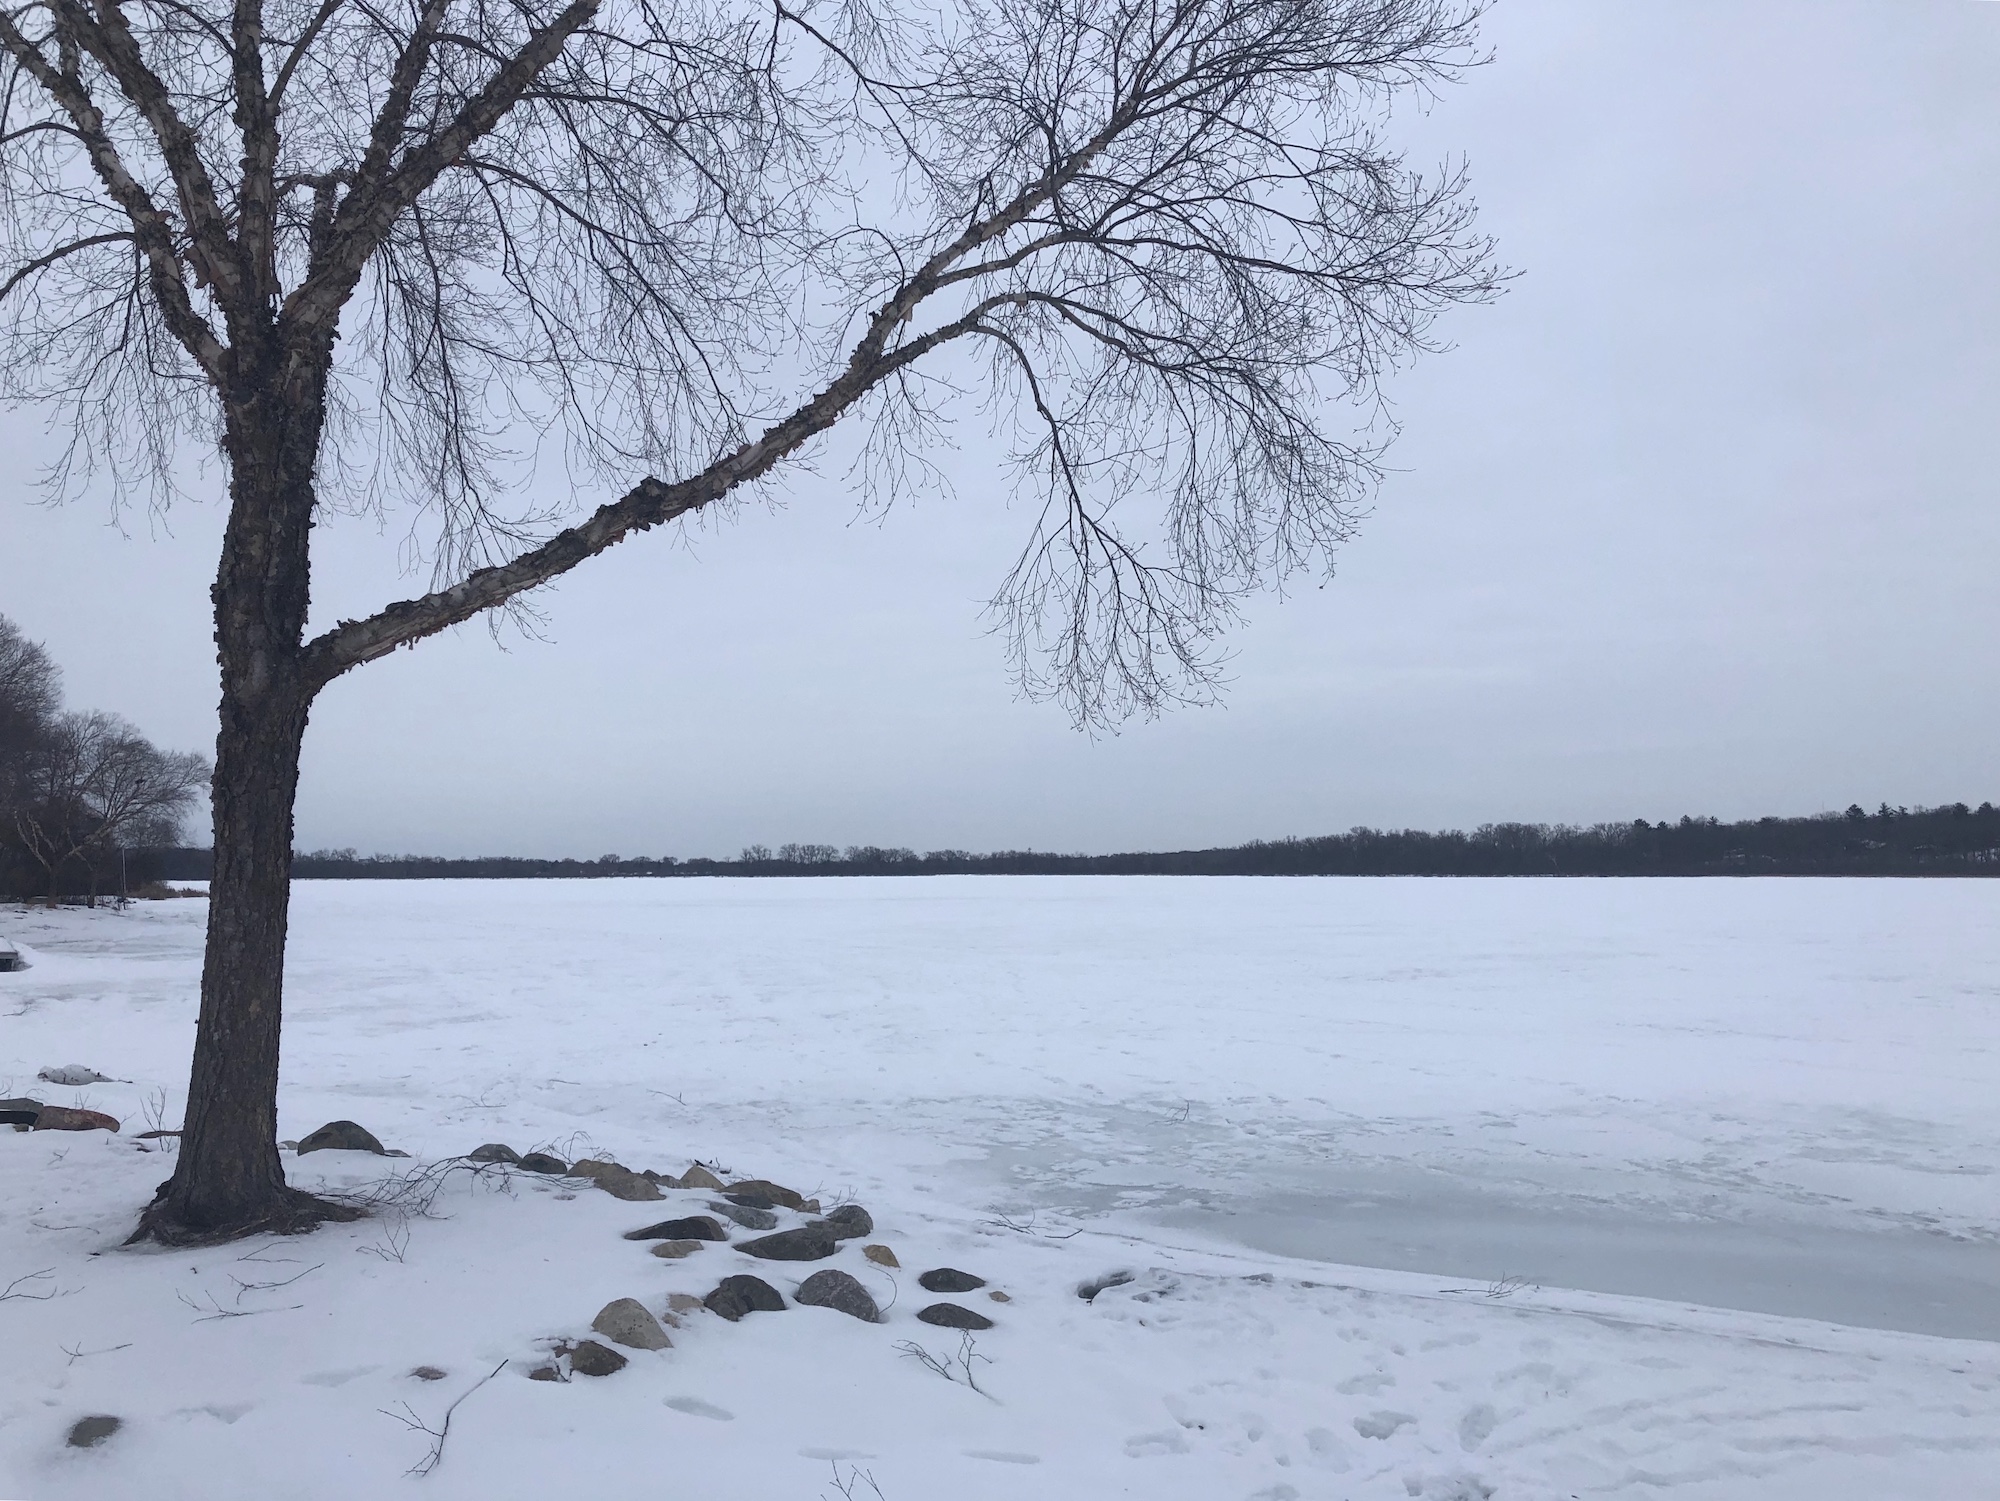 Lake Wingra on February 26, 2019.